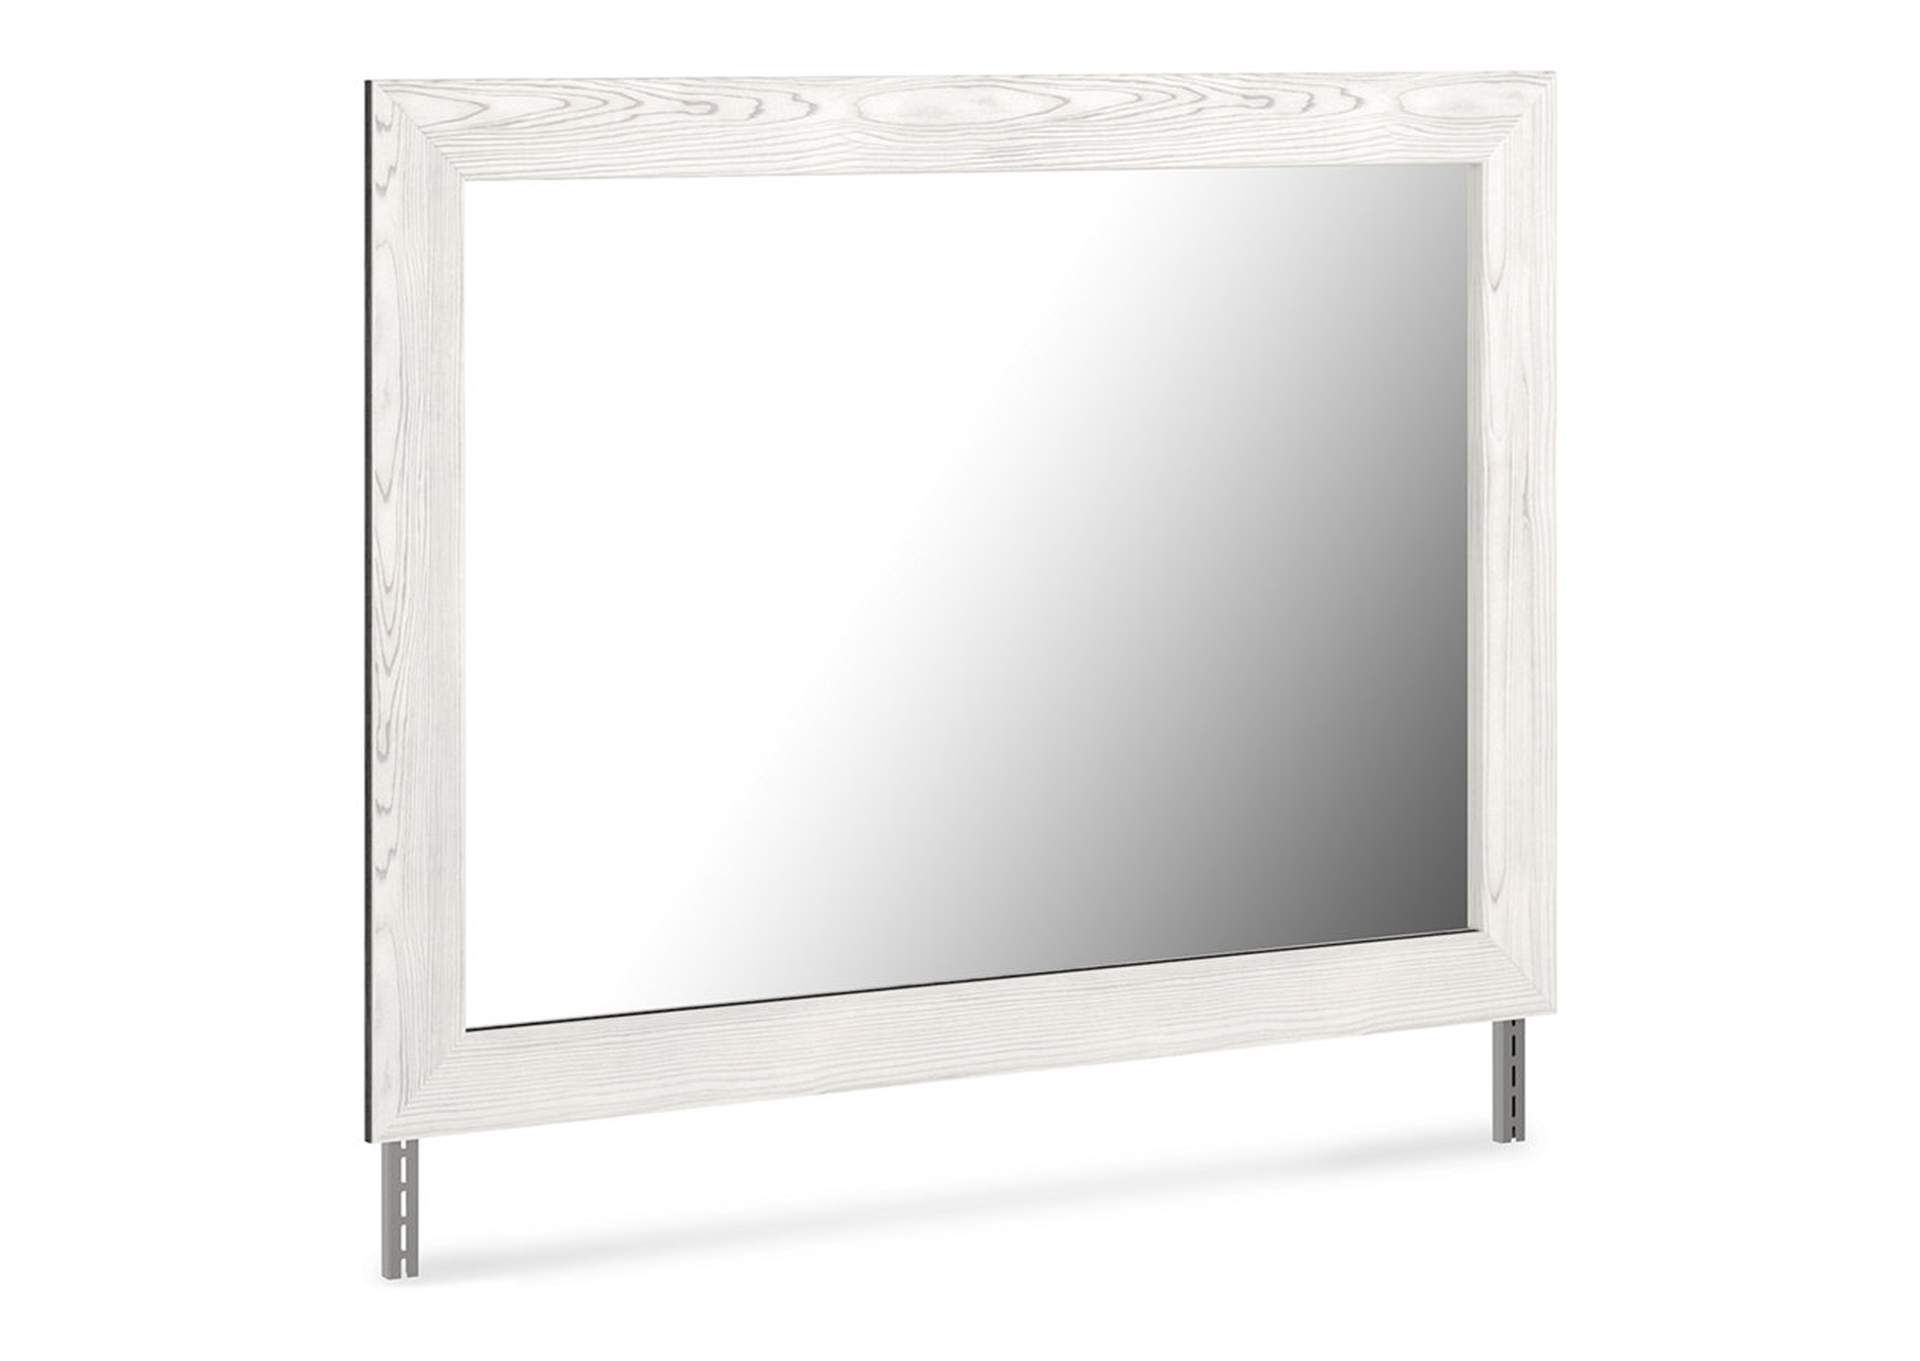 Gerridan Dresser And Mirror New World, White Framed Mirror For Dresser